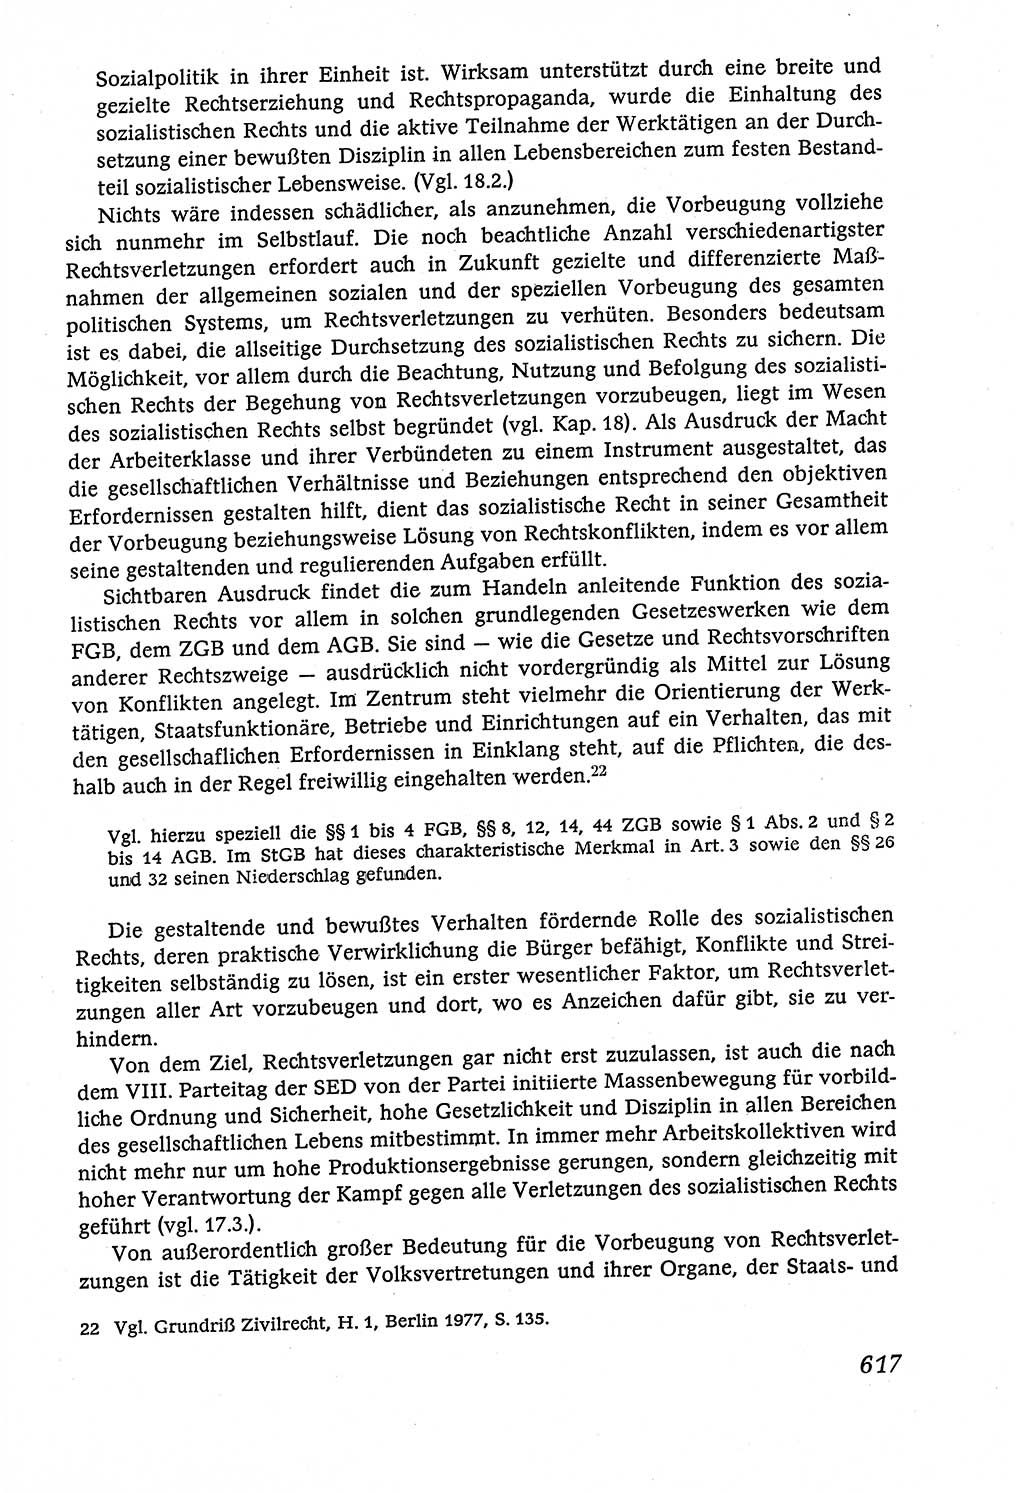 Marxistisch-leninistische (ML) Staats- und Rechtstheorie [Deutsche Demokratische Republik (DDR)], Lehrbuch 1980, Seite 617 (ML St.-R.-Th. DDR Lb. 1980, S. 617)